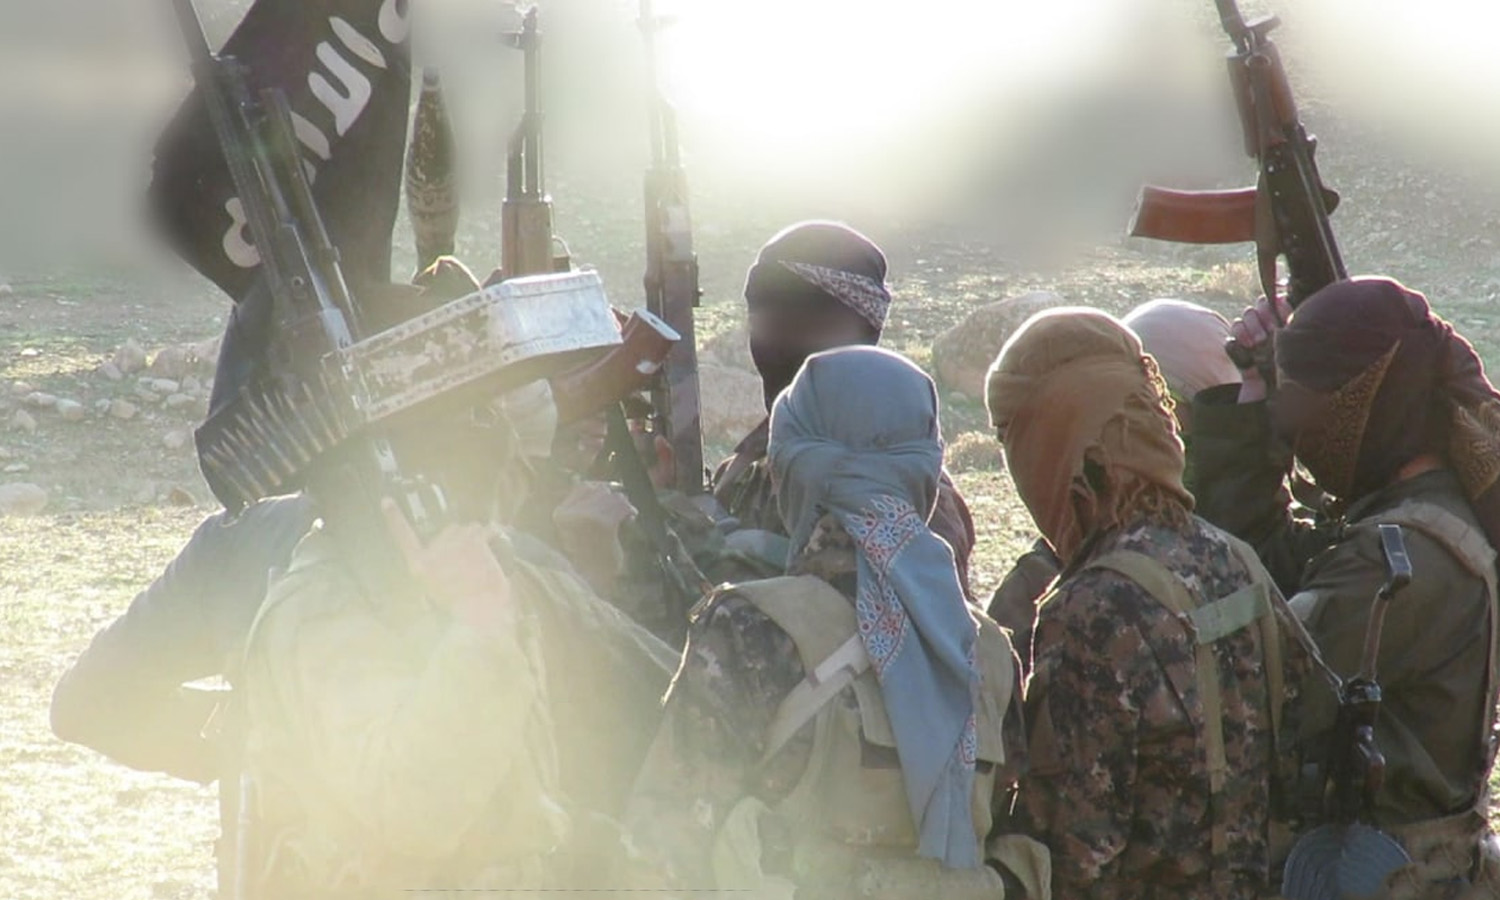 مقاتلون من تنظيم الدولة الإسلامية في مكان وتوقيت غير معروفين بسوريا (معرّف التنظيم في تيلجرام)